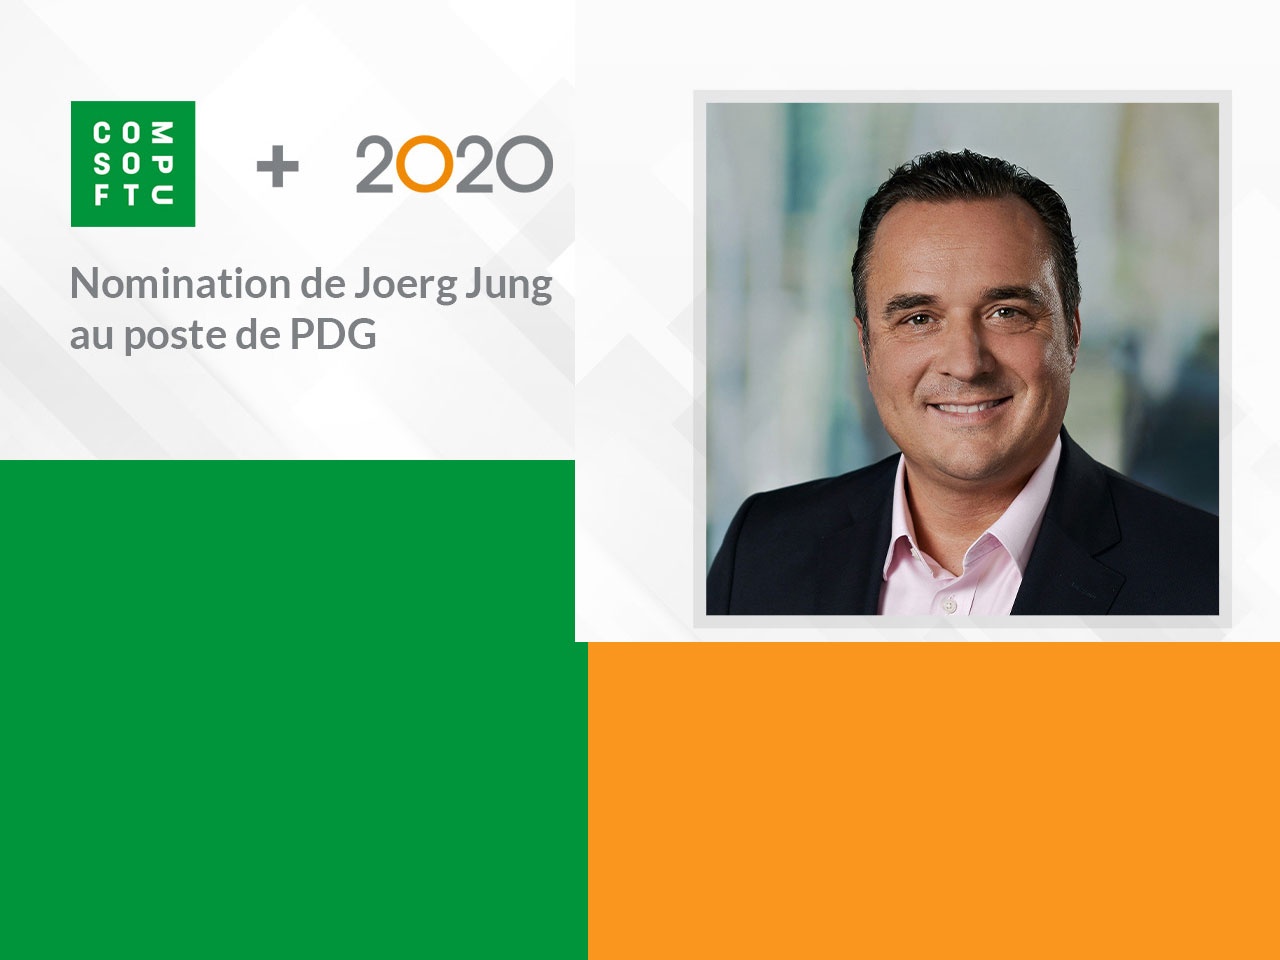 Compusoft + 2020 nomme Joerg Jung au poste de PDG de la société récemment fusionnée fin 2021